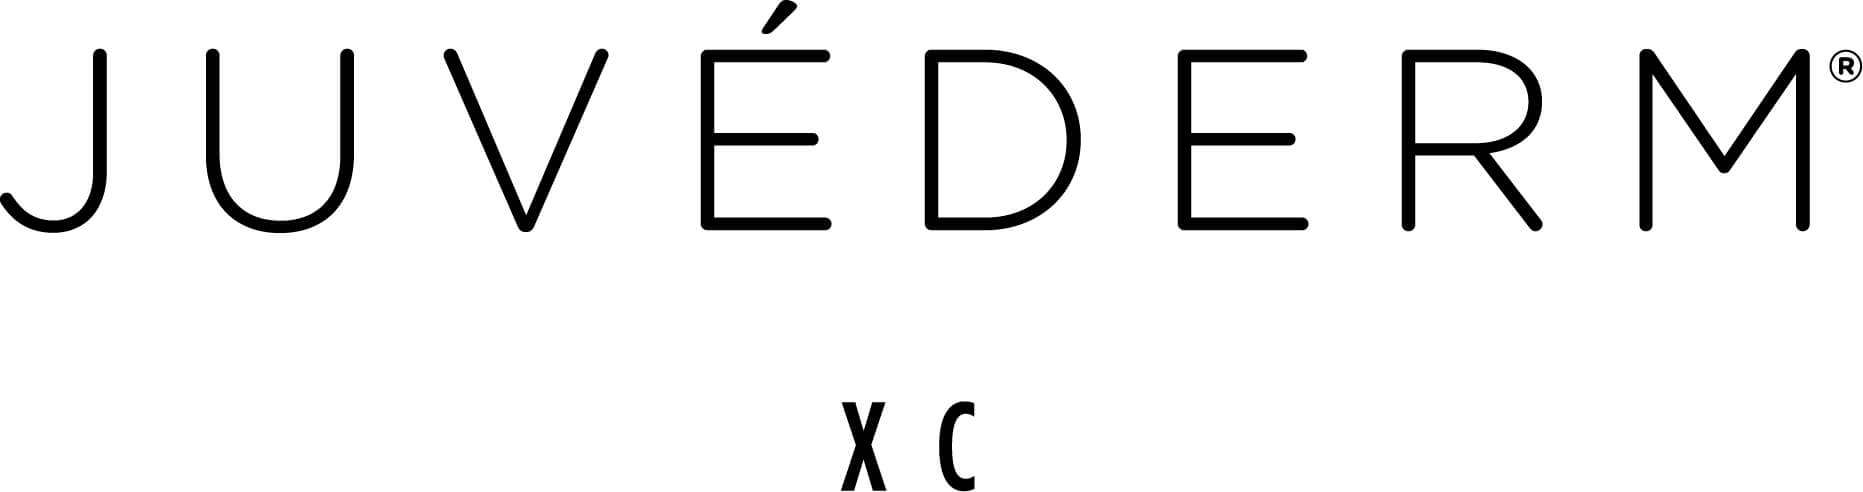 Juvederm XC Logo